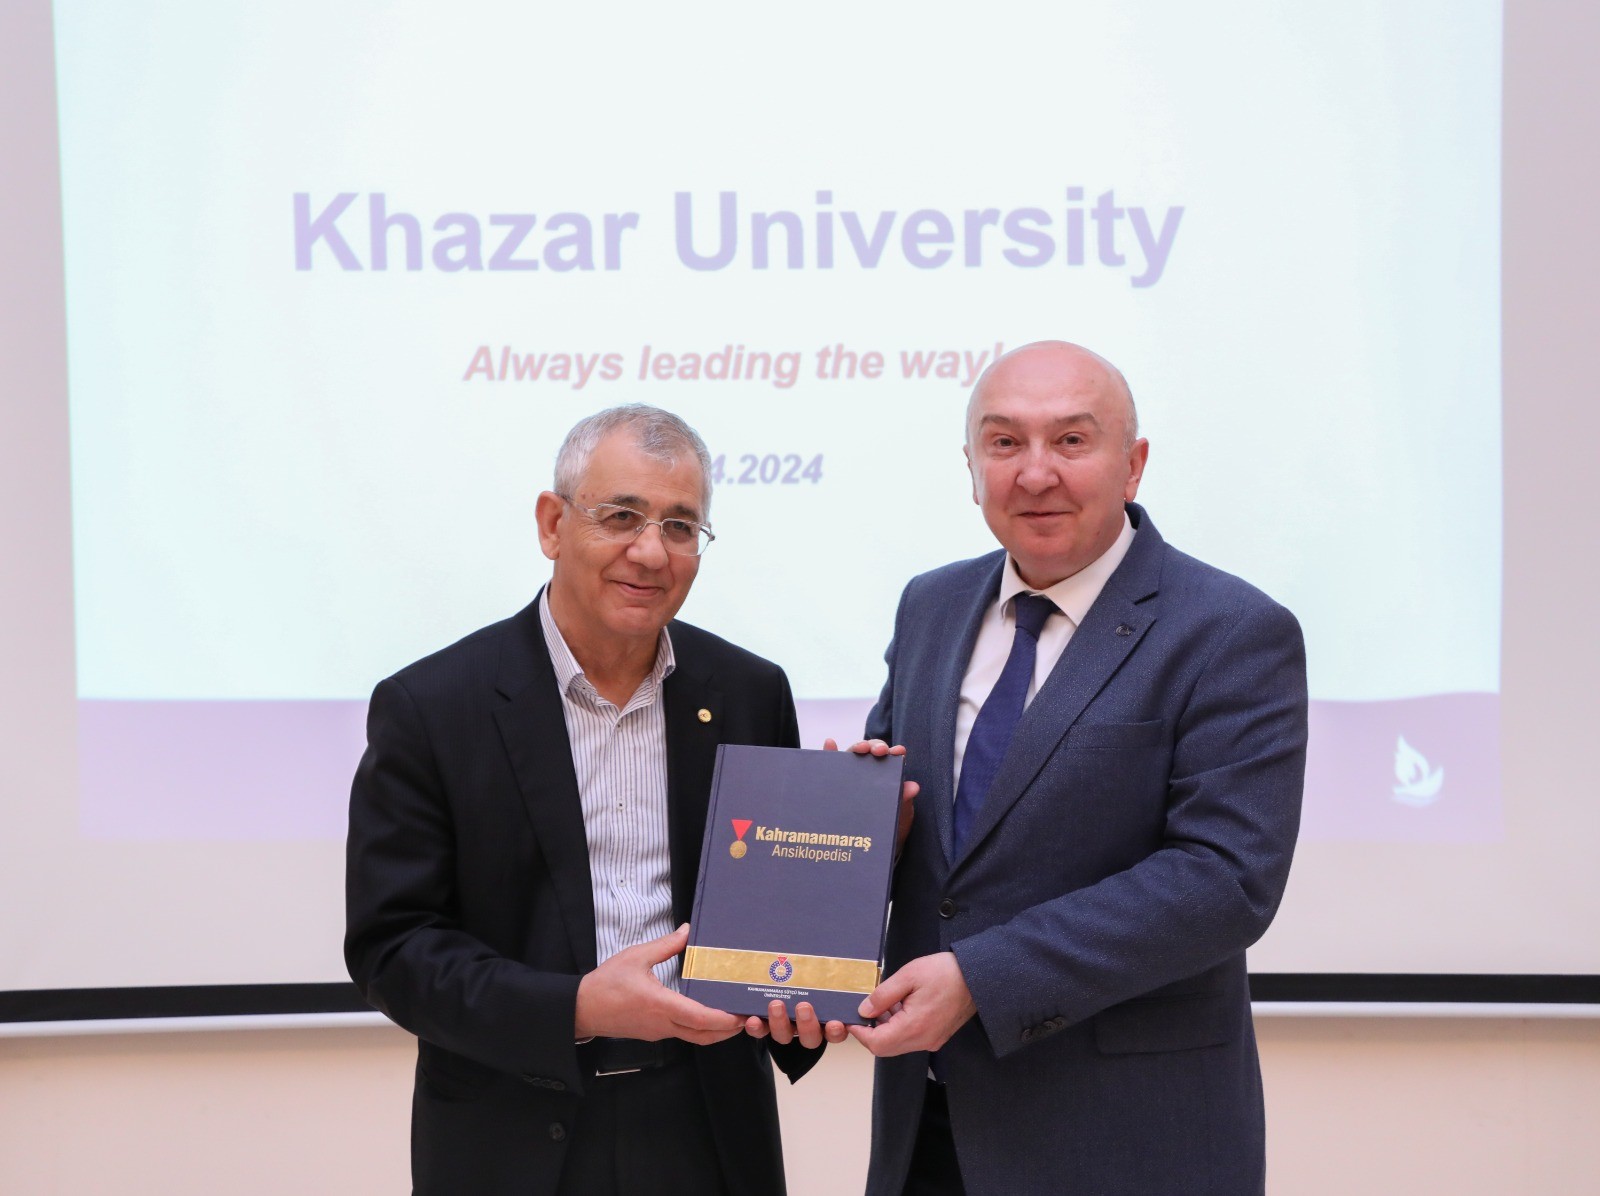 KSÜ’den Azerbaycan Hazar Üniversitesi’ne İş Birliği Ziyareti